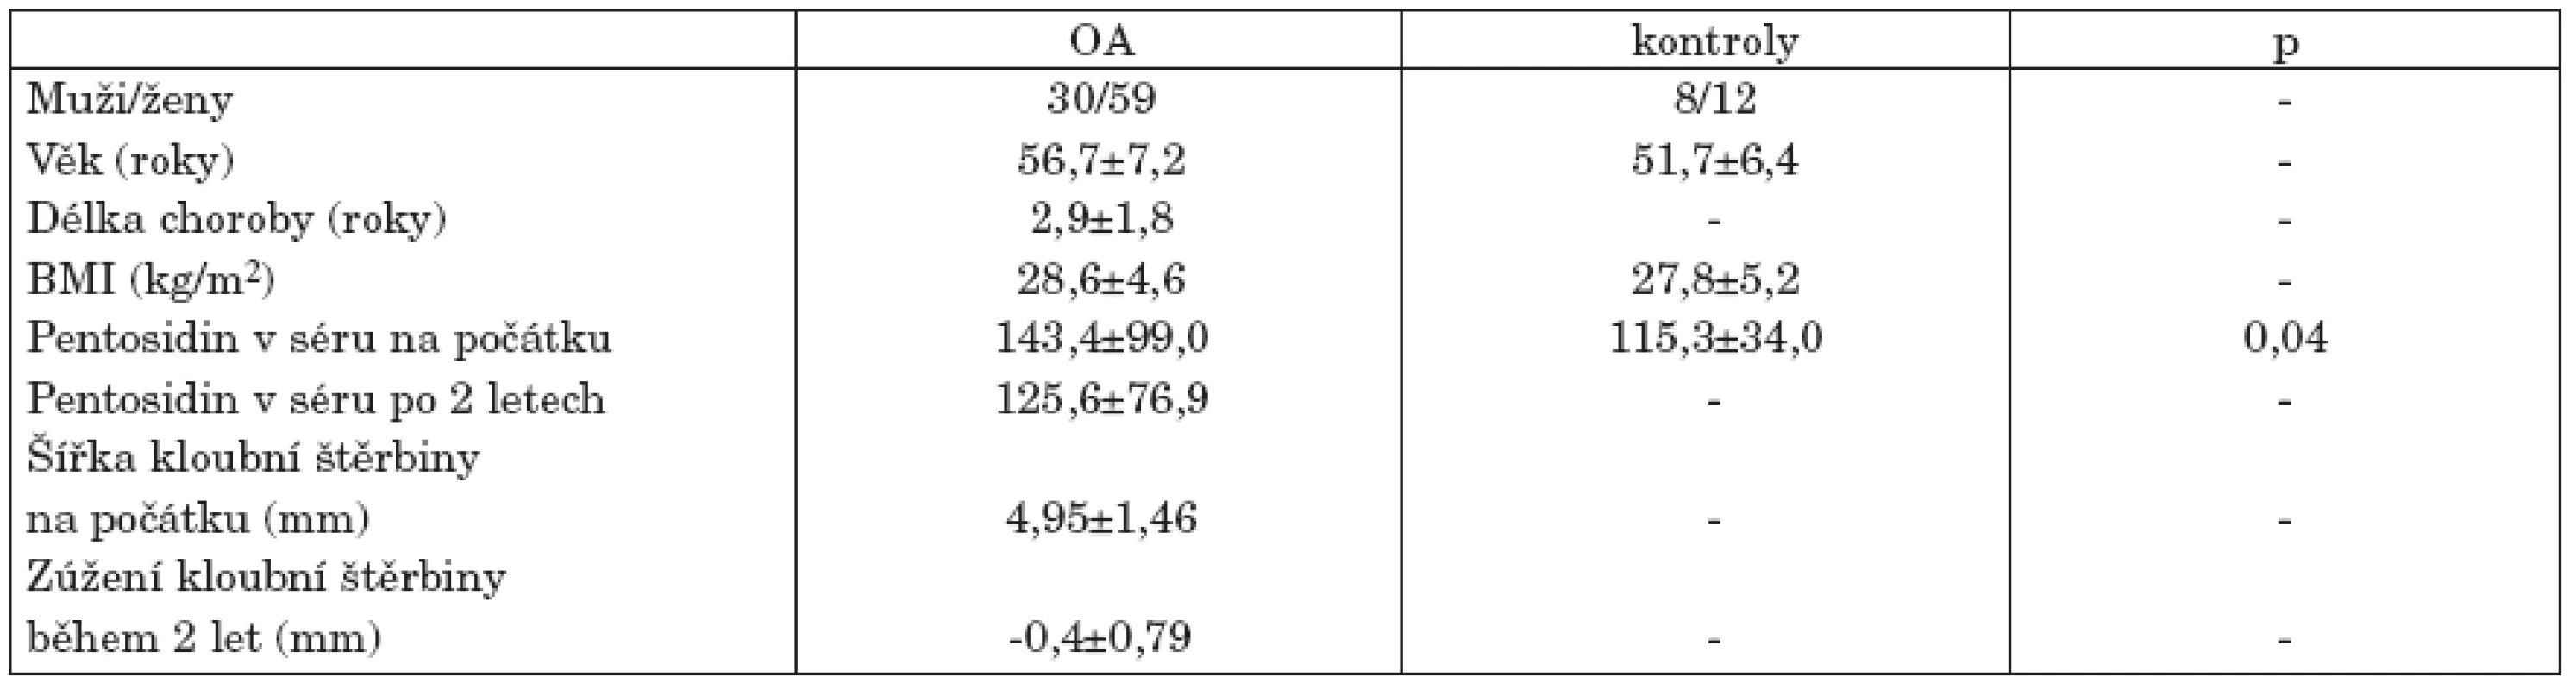 Demografická data jedinců longitudinální studie hodnotící prediktivní význam pentosidinu při hodnocení progrese osteoartrózy (OA) kolenních kloubů během 2letého sledování.